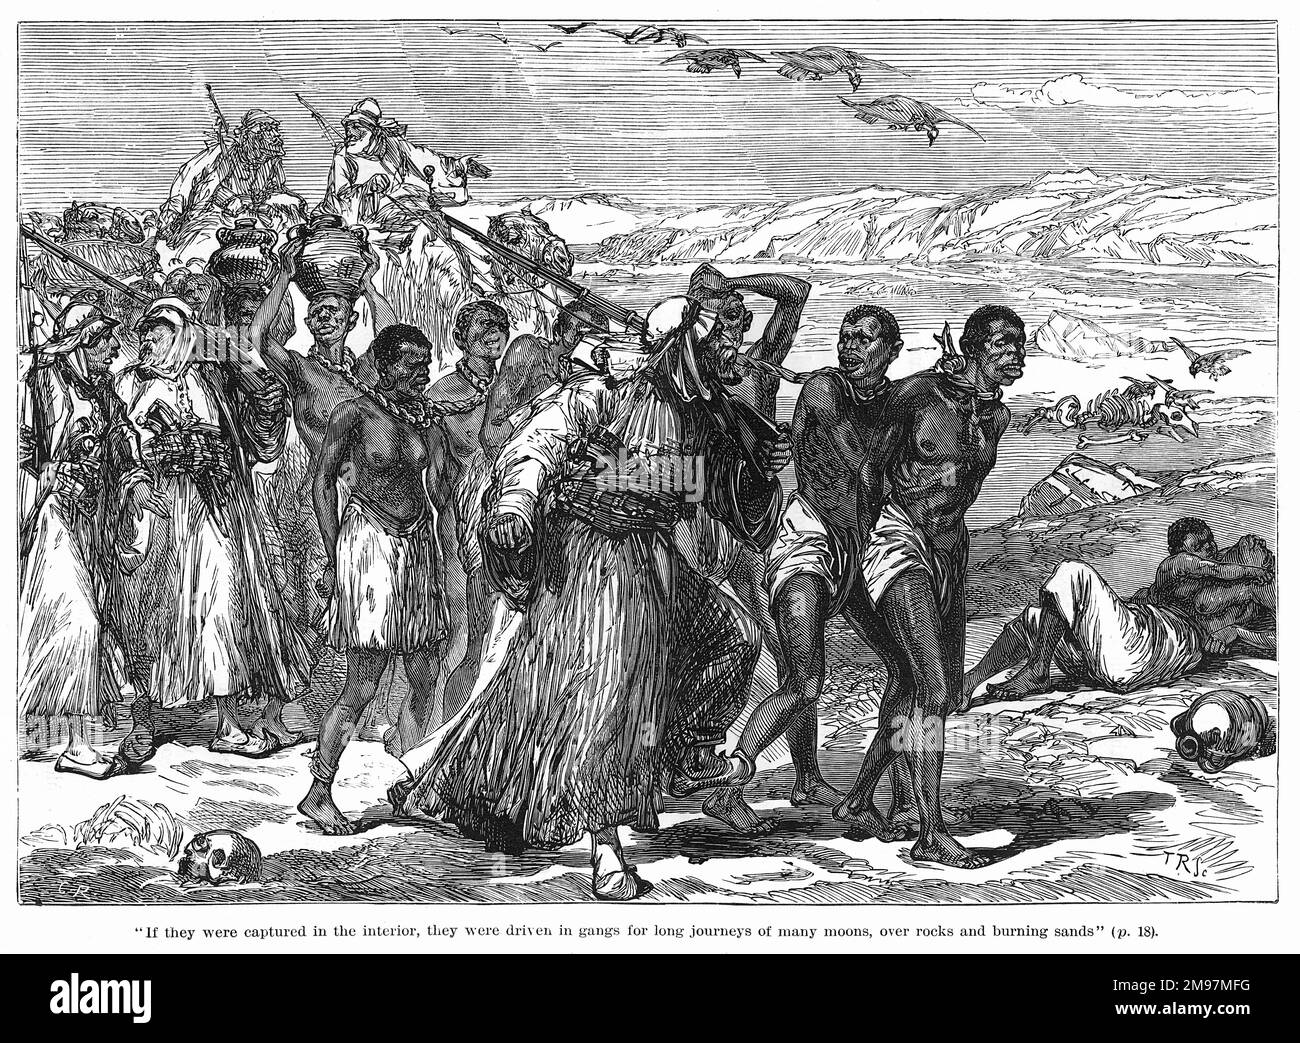 Cattura degli africani per la schiavitù -- se catturati nell'interno, sono stati legati insieme e guidati in bande per lunghi viaggi sulle rocce e sabbie brucianti per raggiungere la costa. Foto Stock